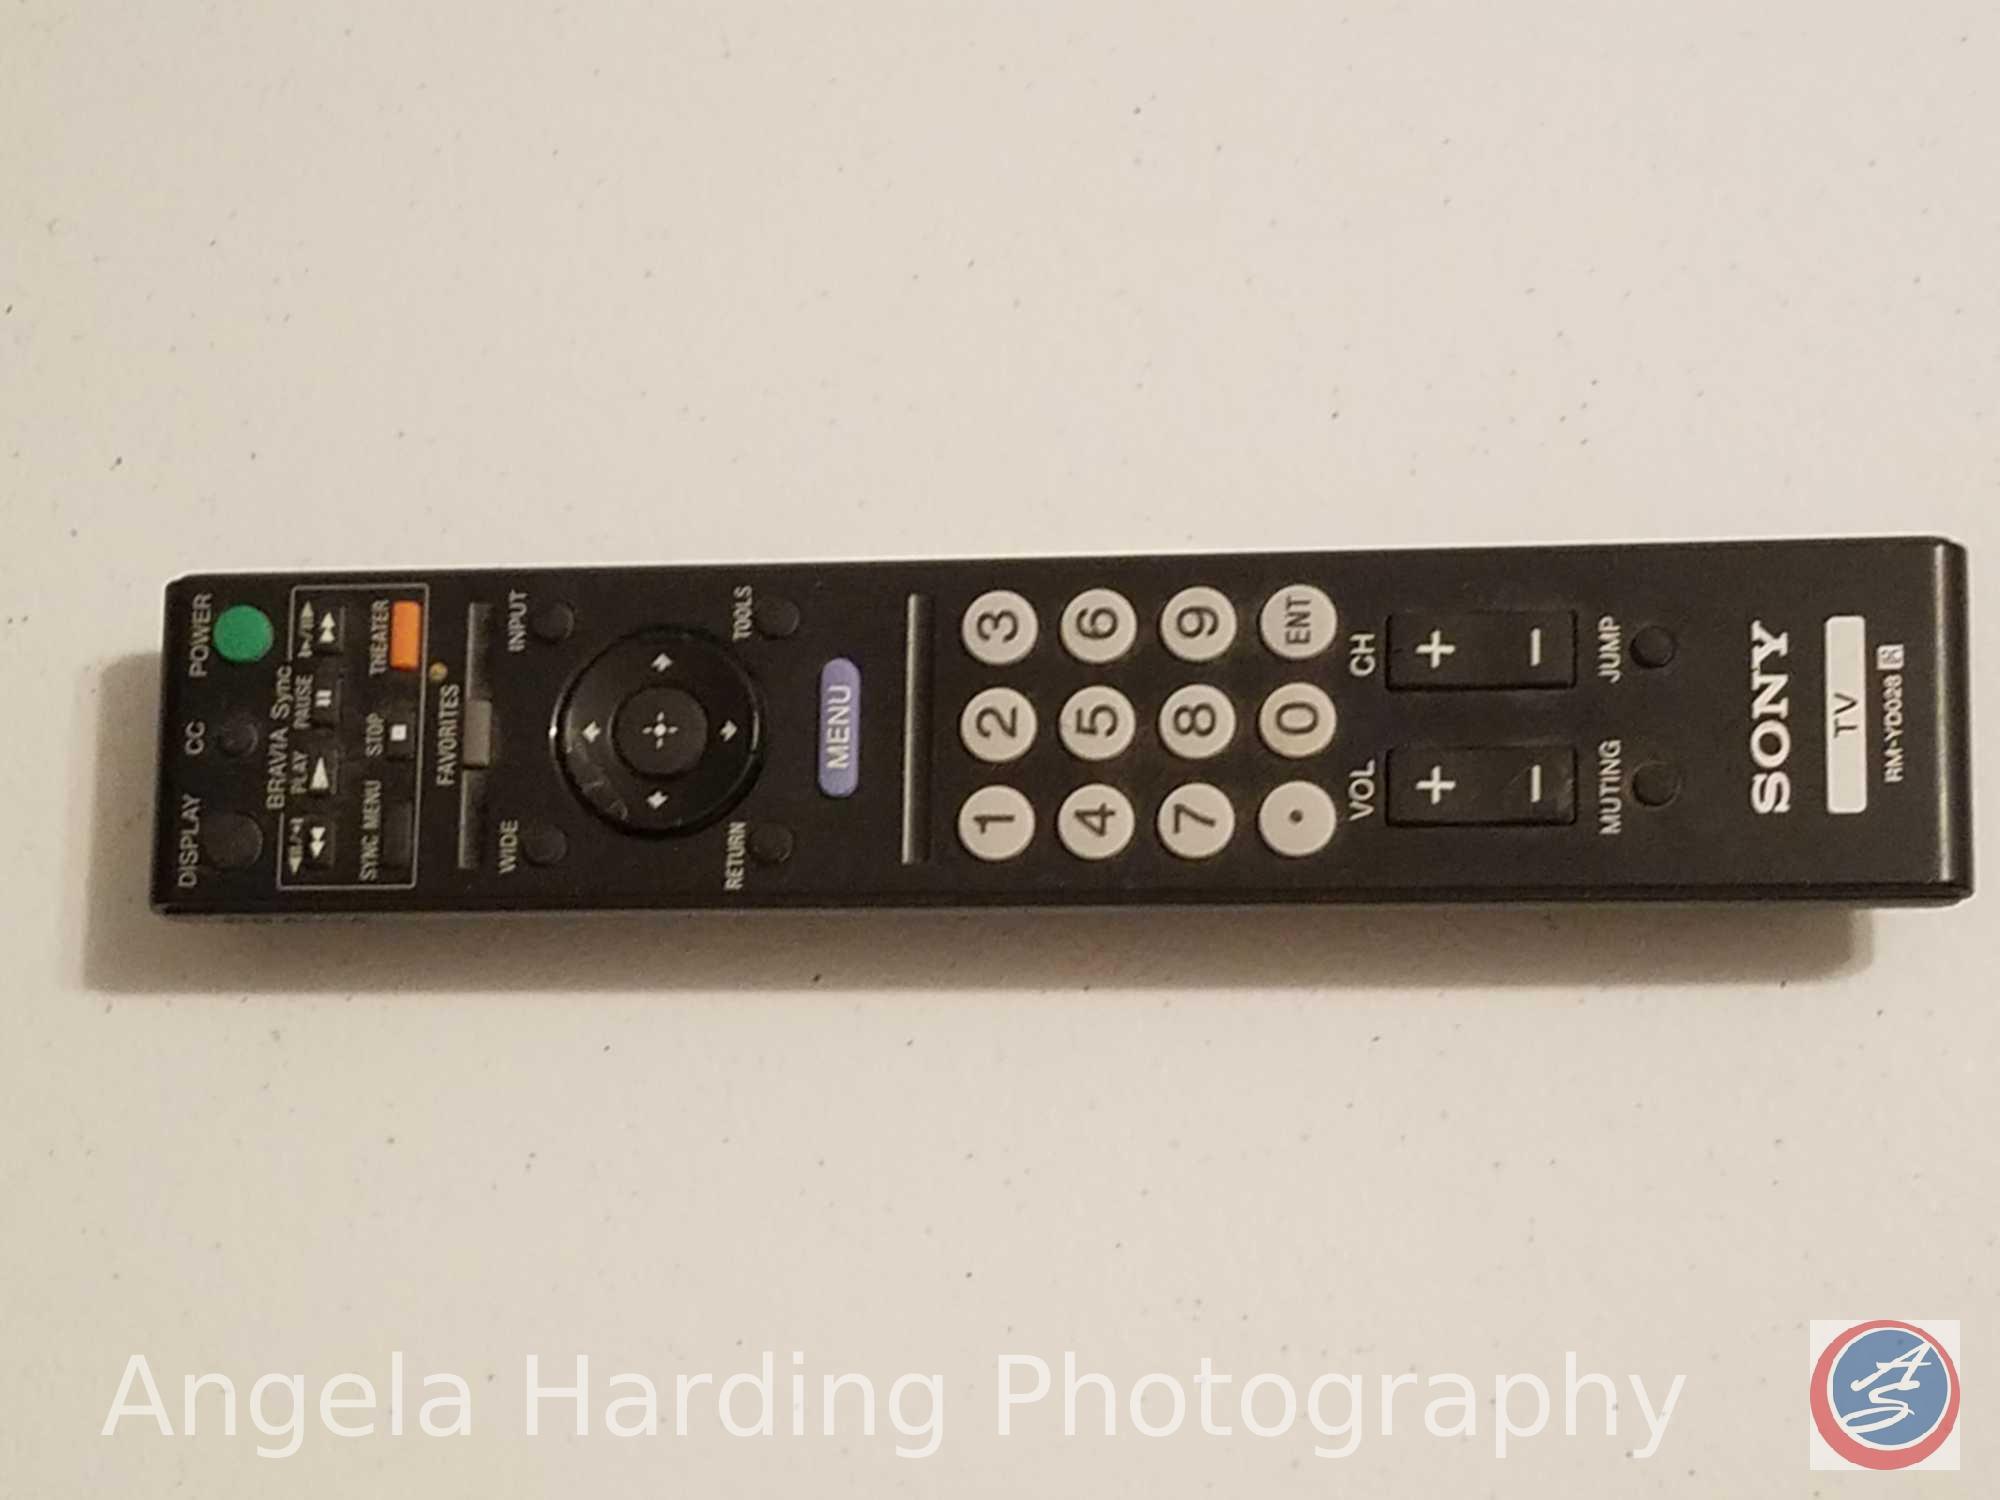 Sony Bravia 40" Flat Screen TV Model KDL-40W600B with Remote